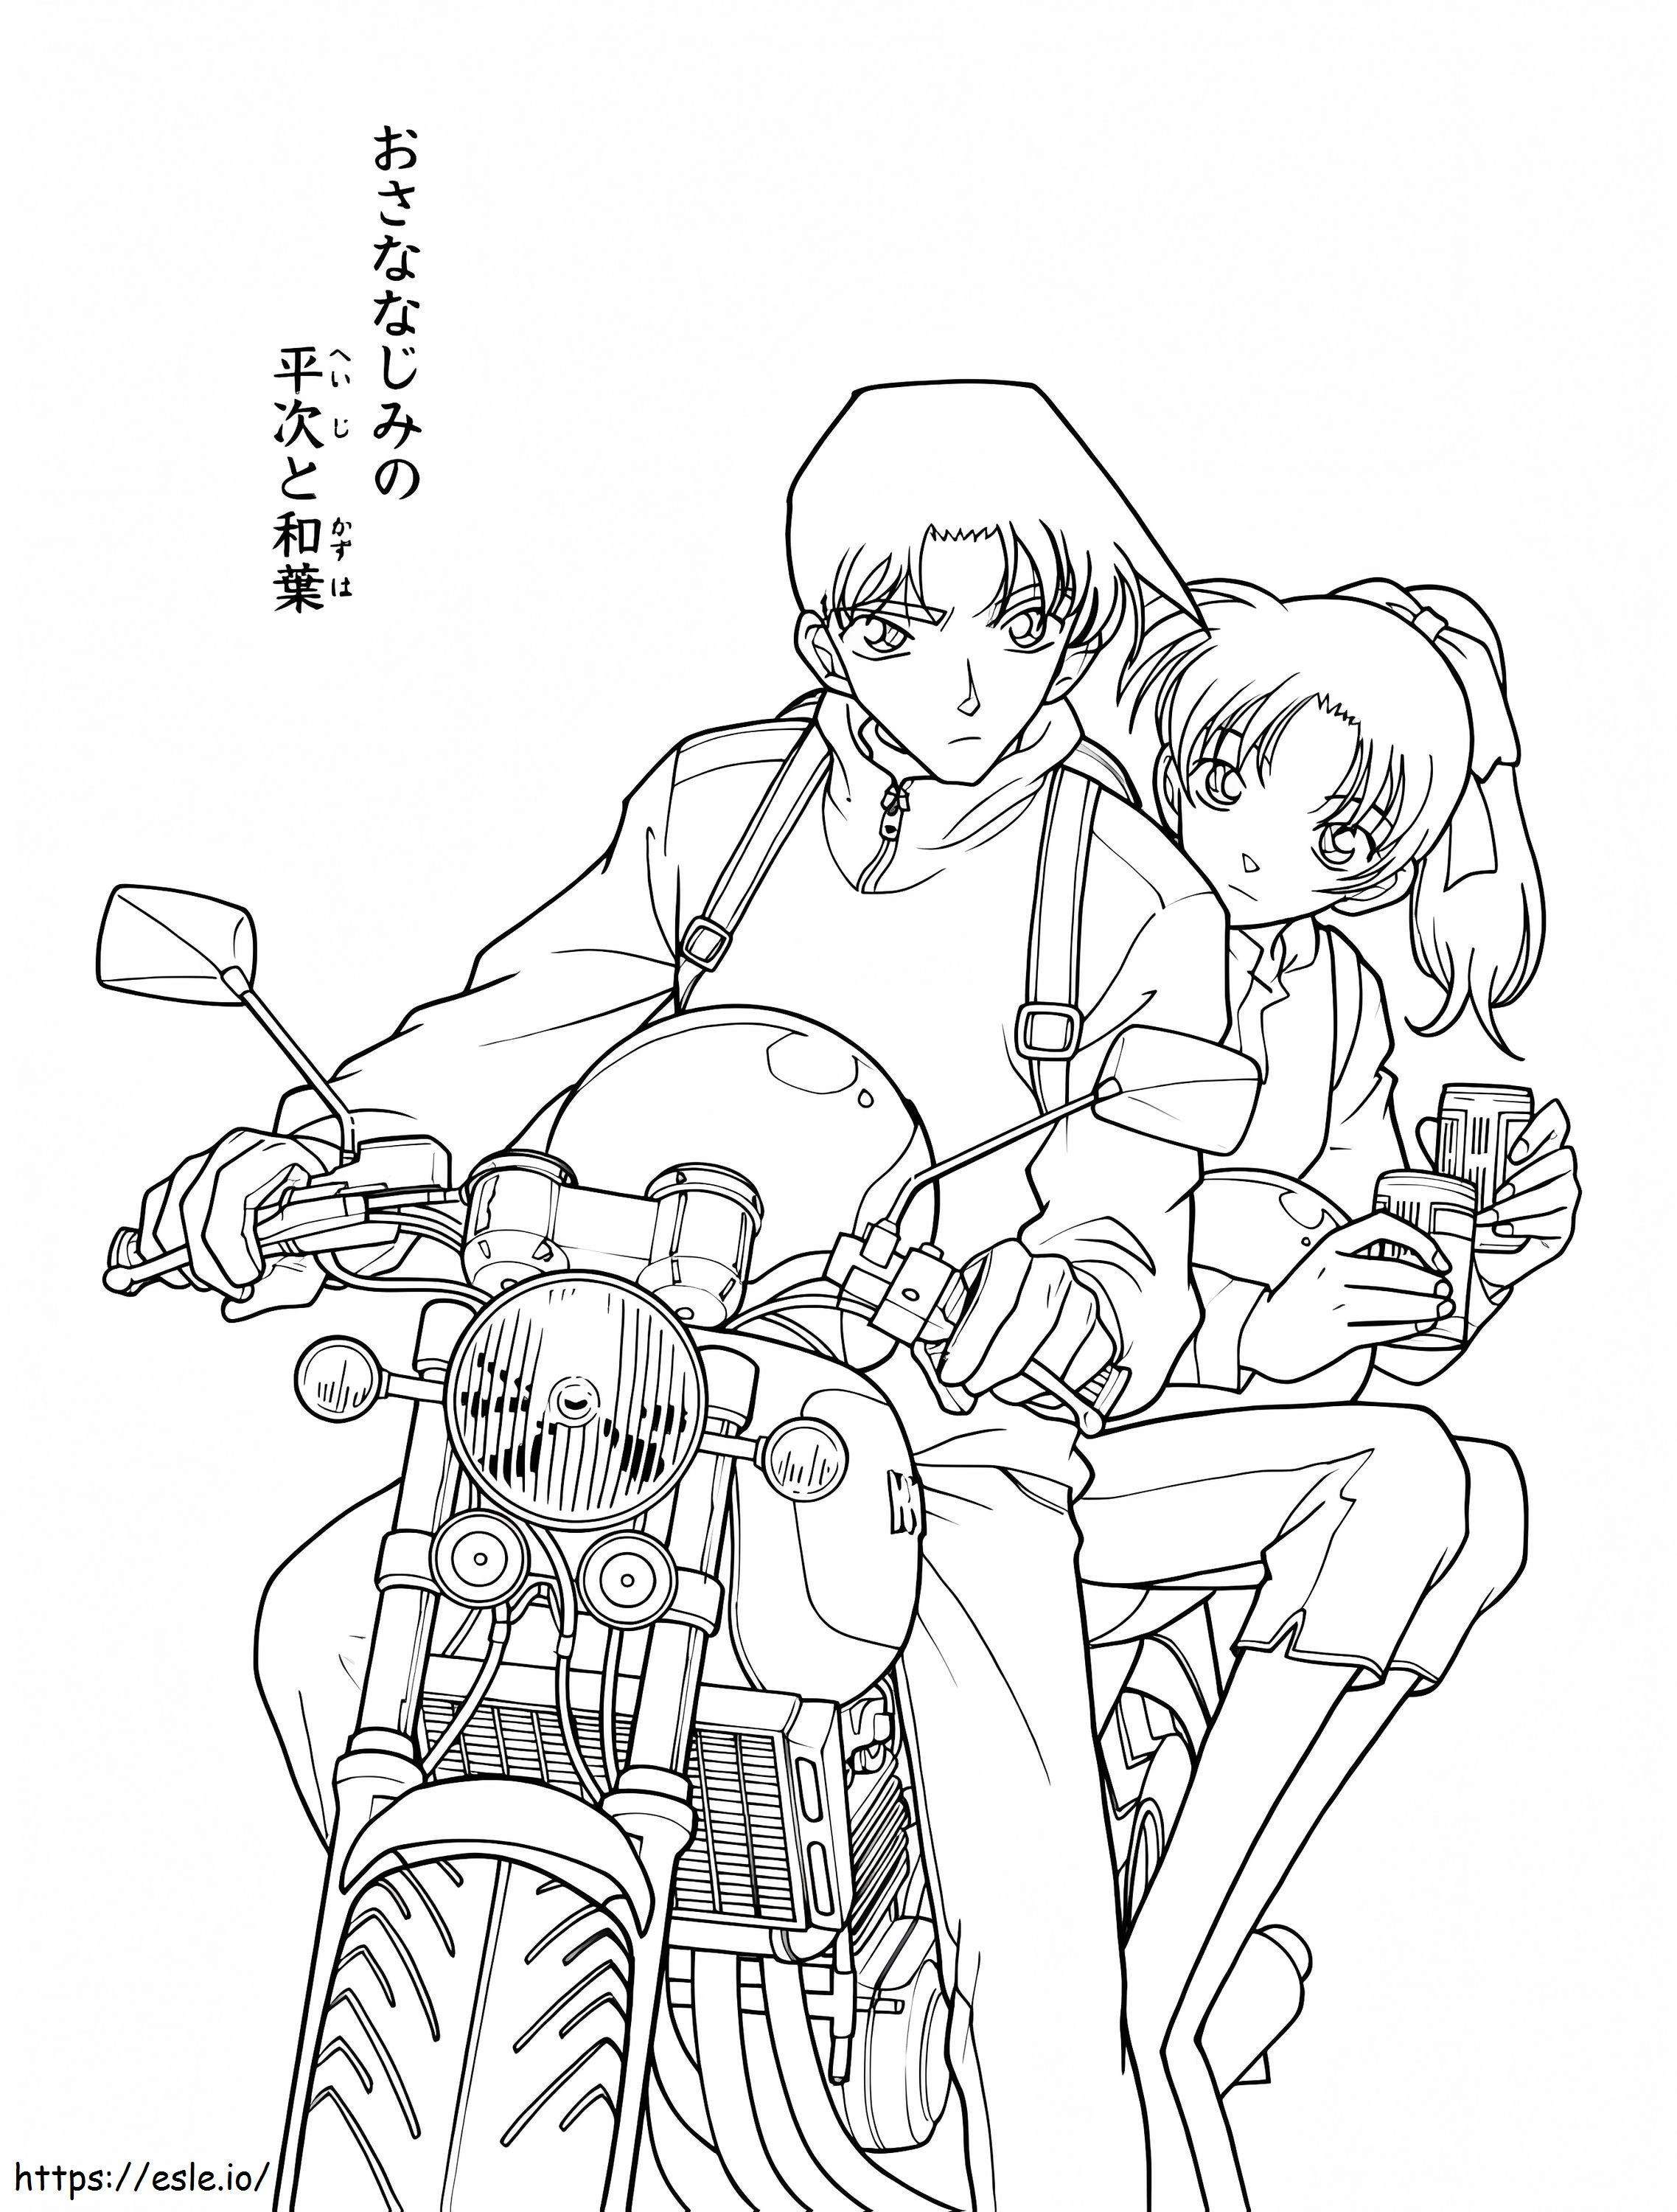 Heiji Hattori ve Kazuha Toyama ve Motocicletas boyama